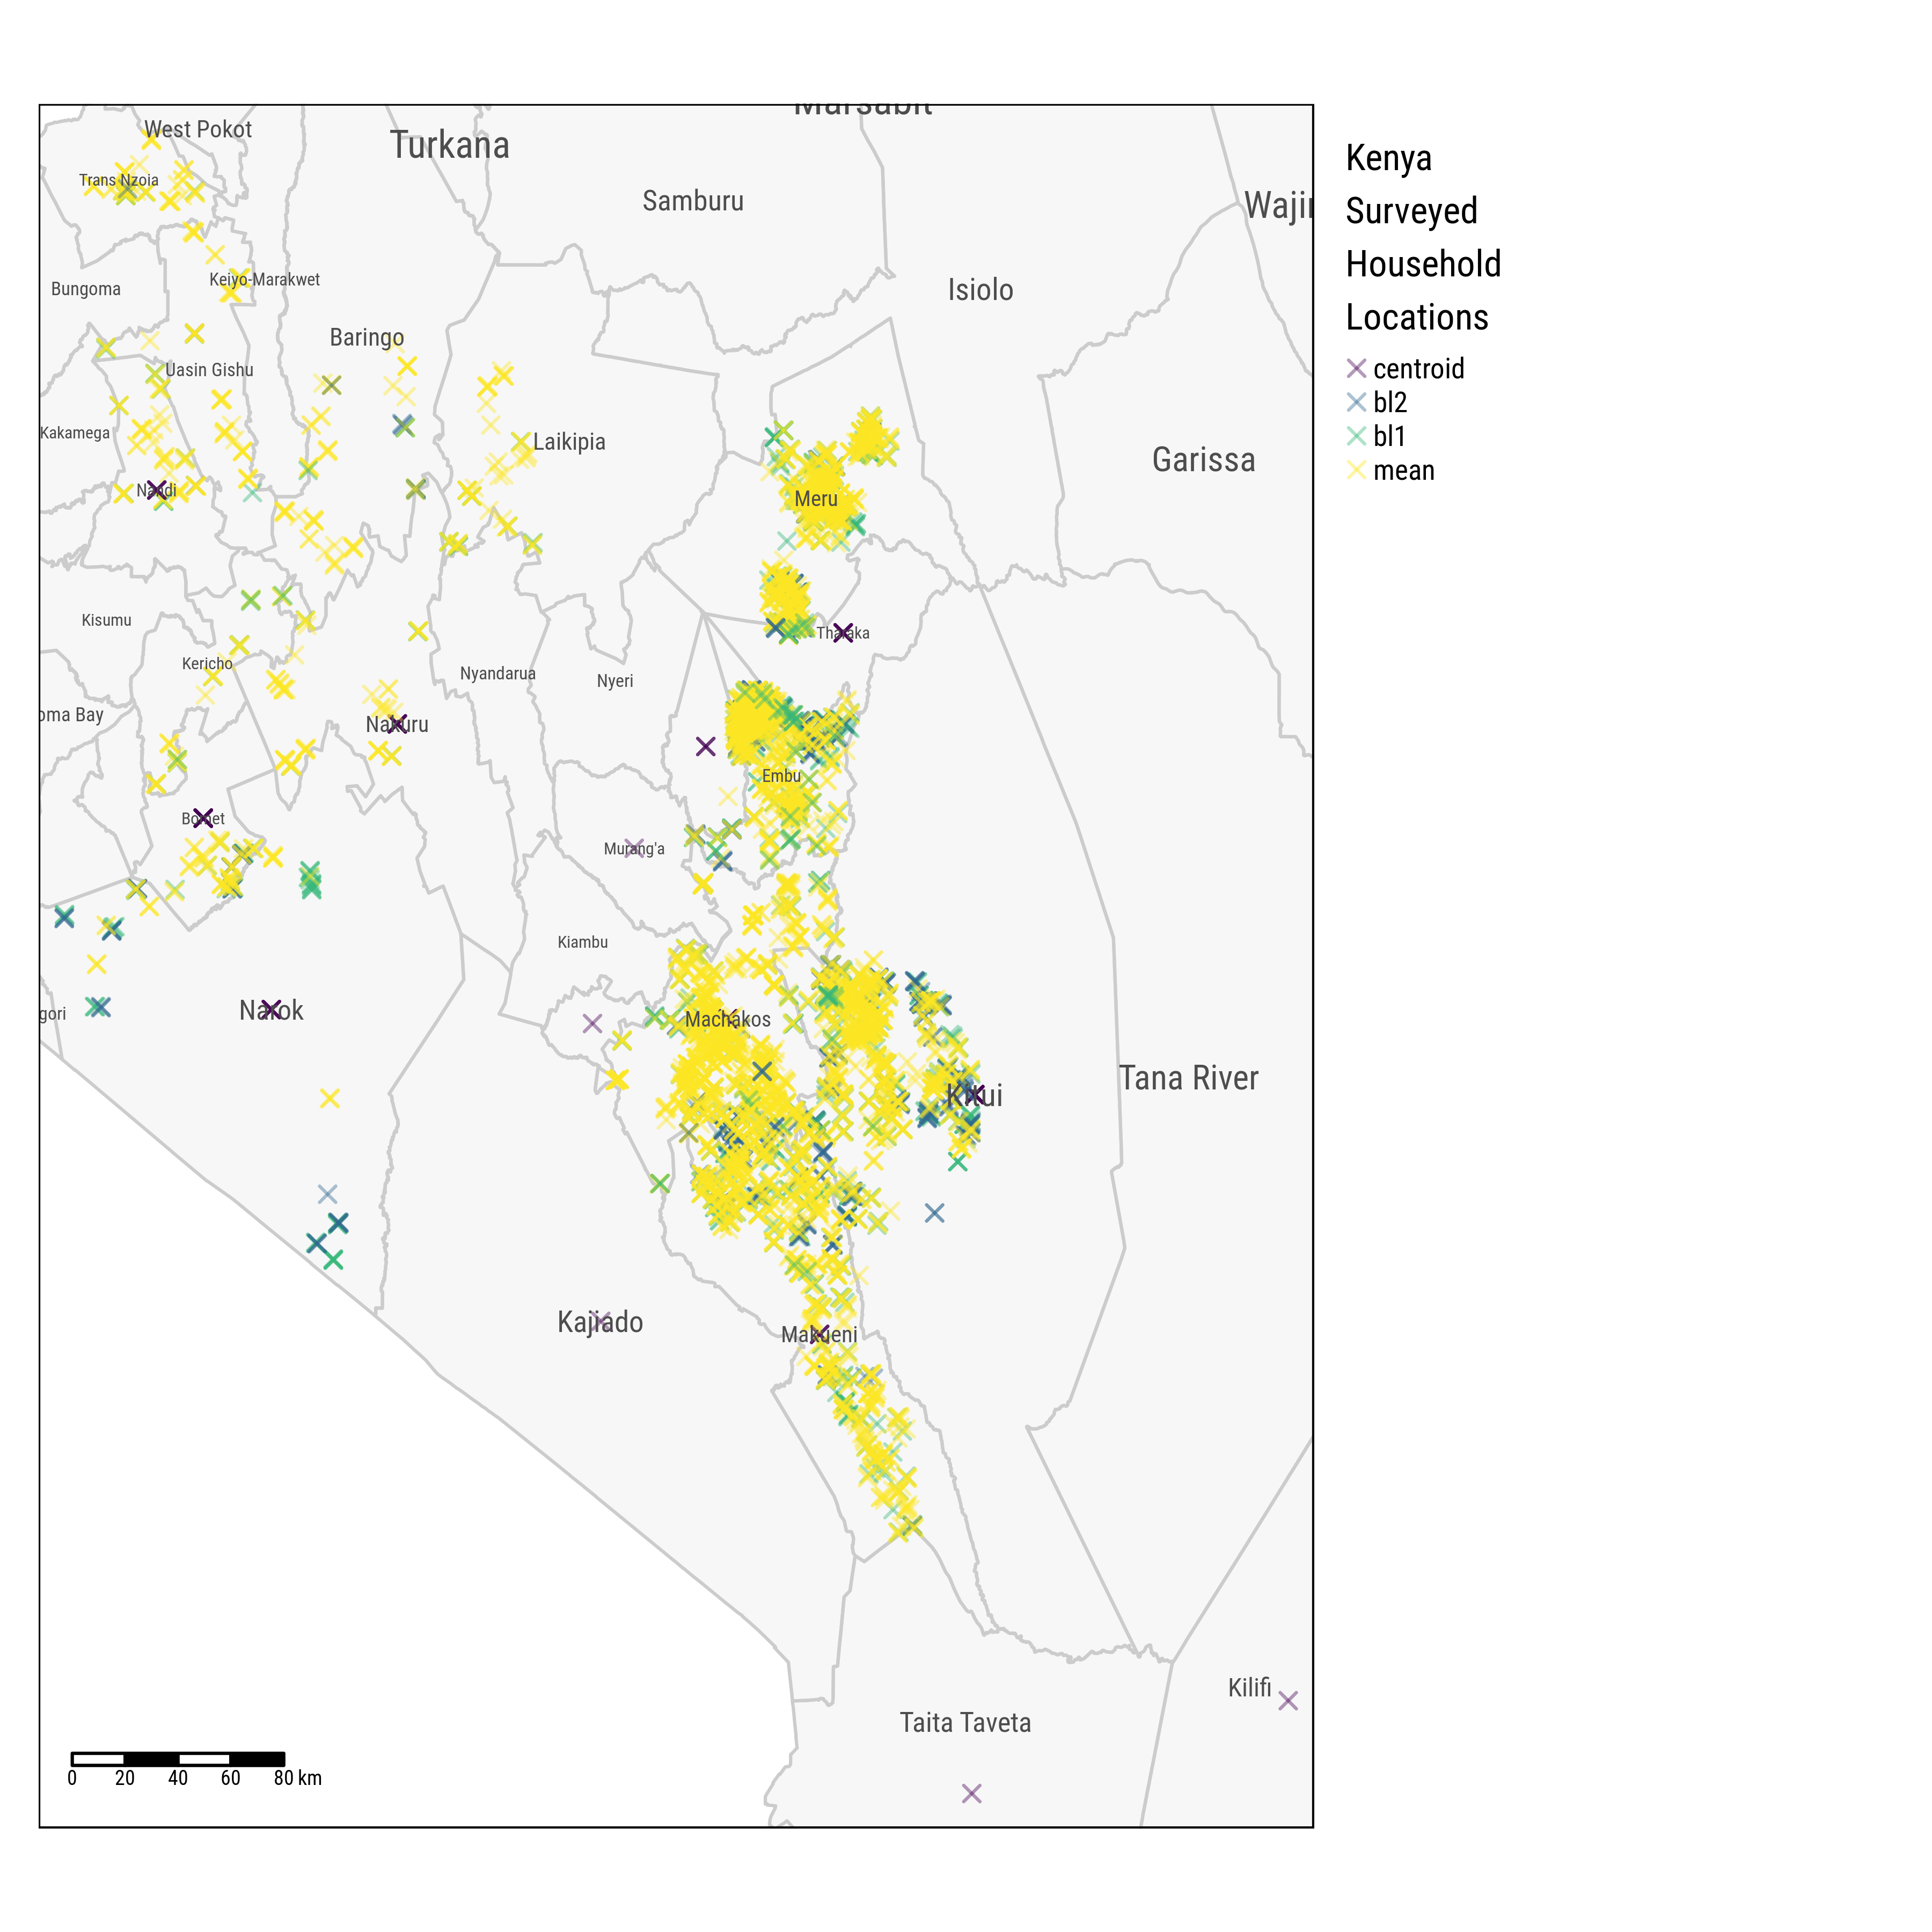 Households Locations across Counties, Kenya